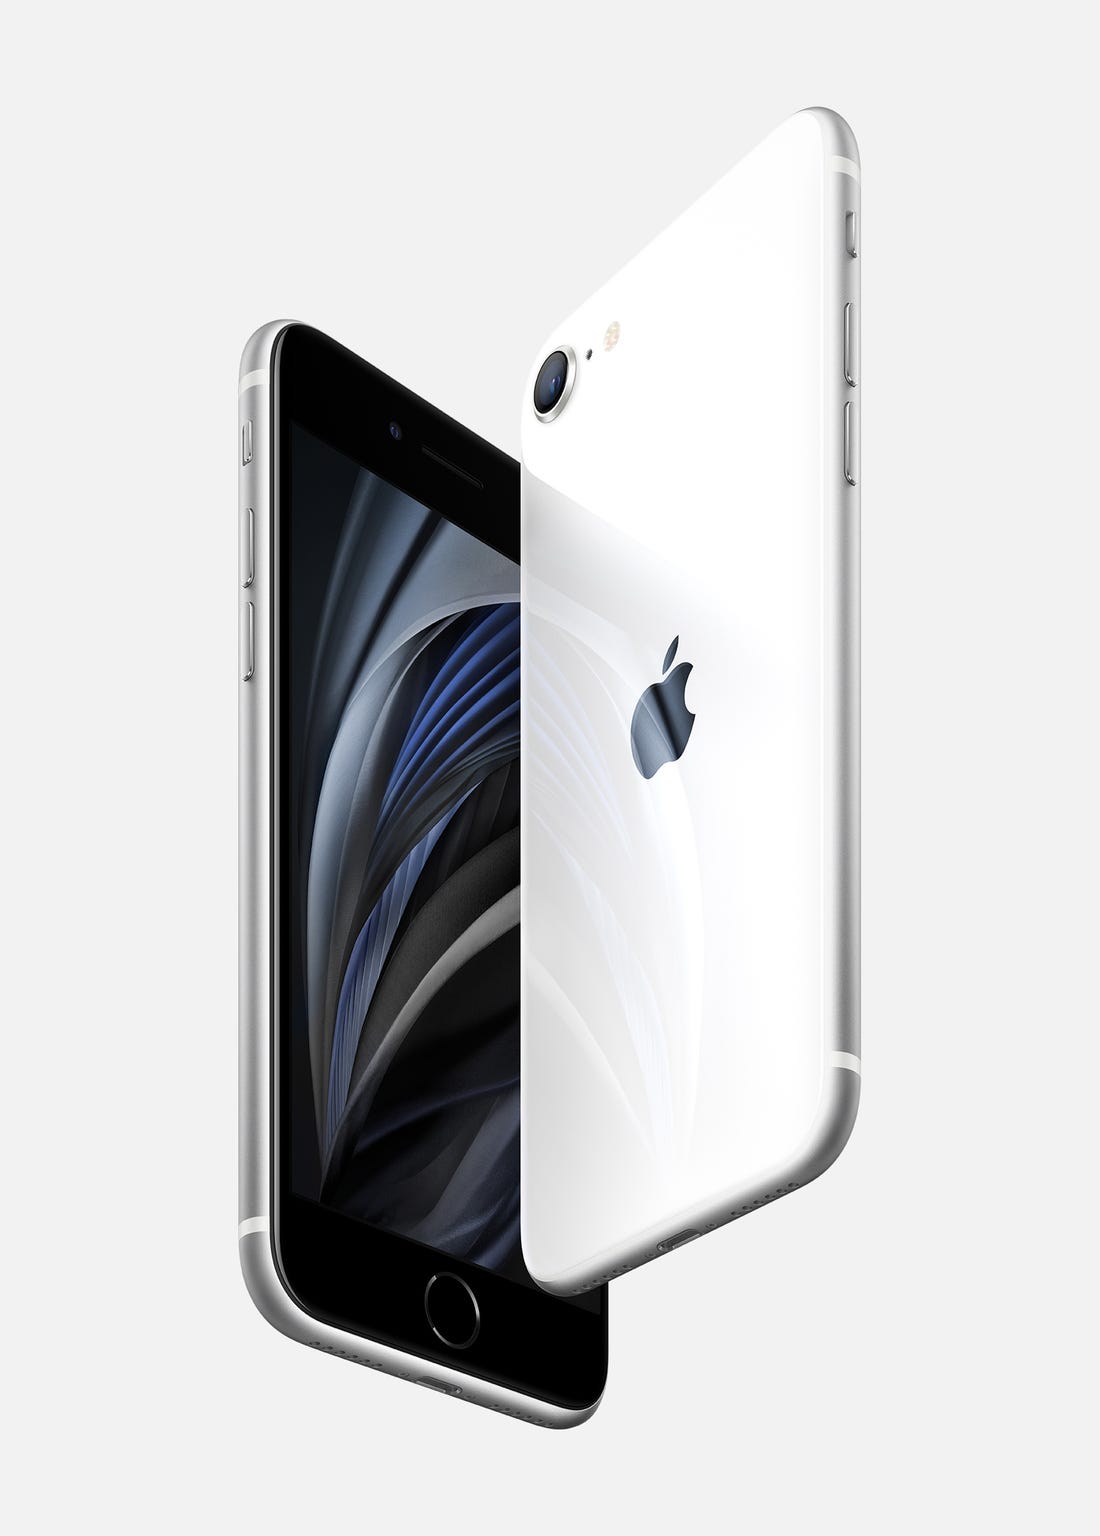 Apple Baru Saja Mengeluarkan iPhone SE 2, Ditopang Kapasitas Baterai yang Kecil, Masih Worth it ??